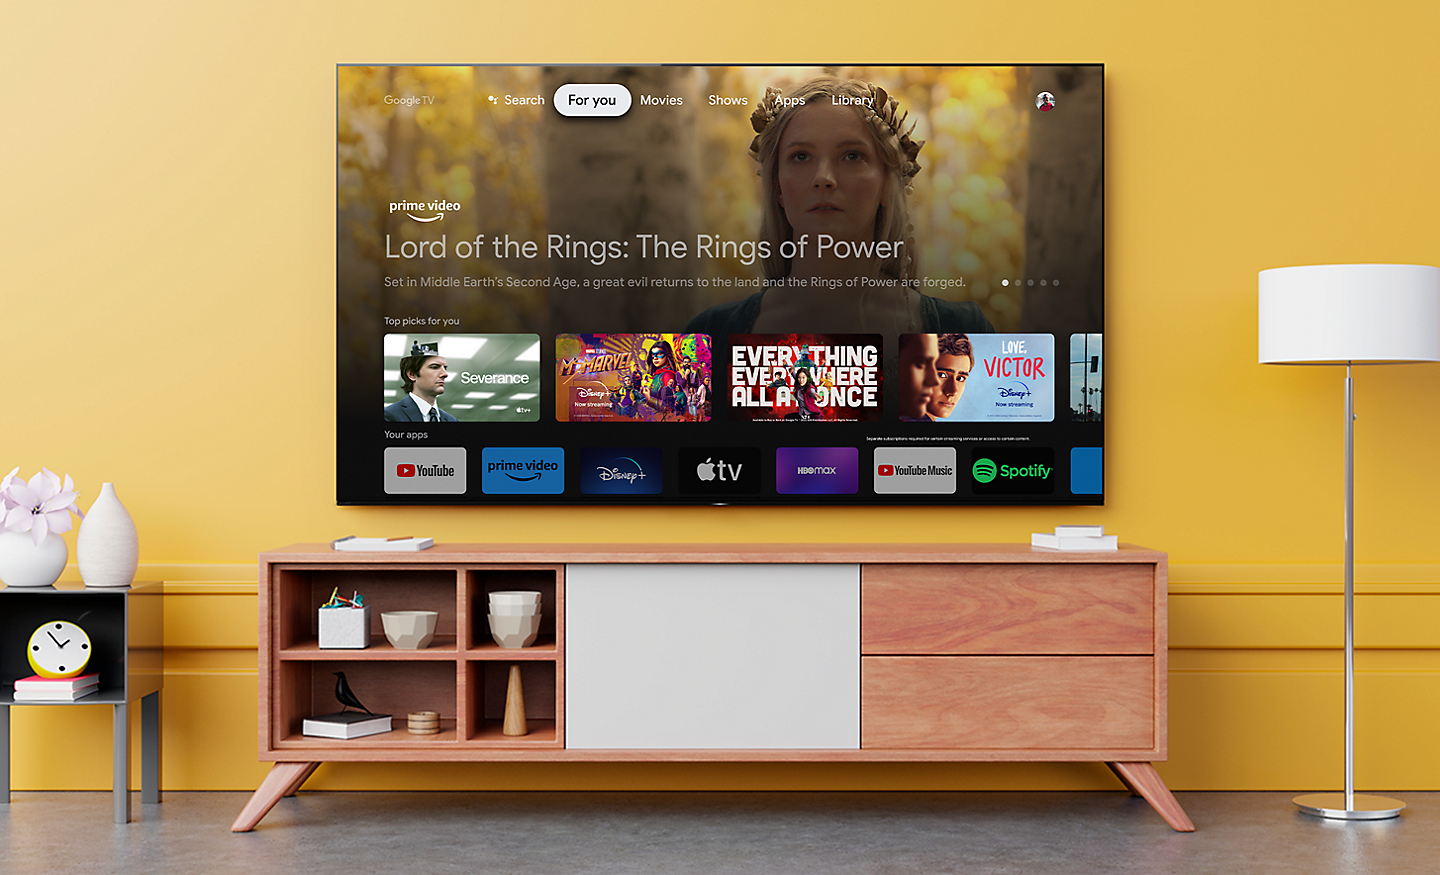 Abbildung eines BRAVIA Fernsehers in einem Wohnzimmer mit einem Menü, das die verschiedenen verfügbaren Services zeigt